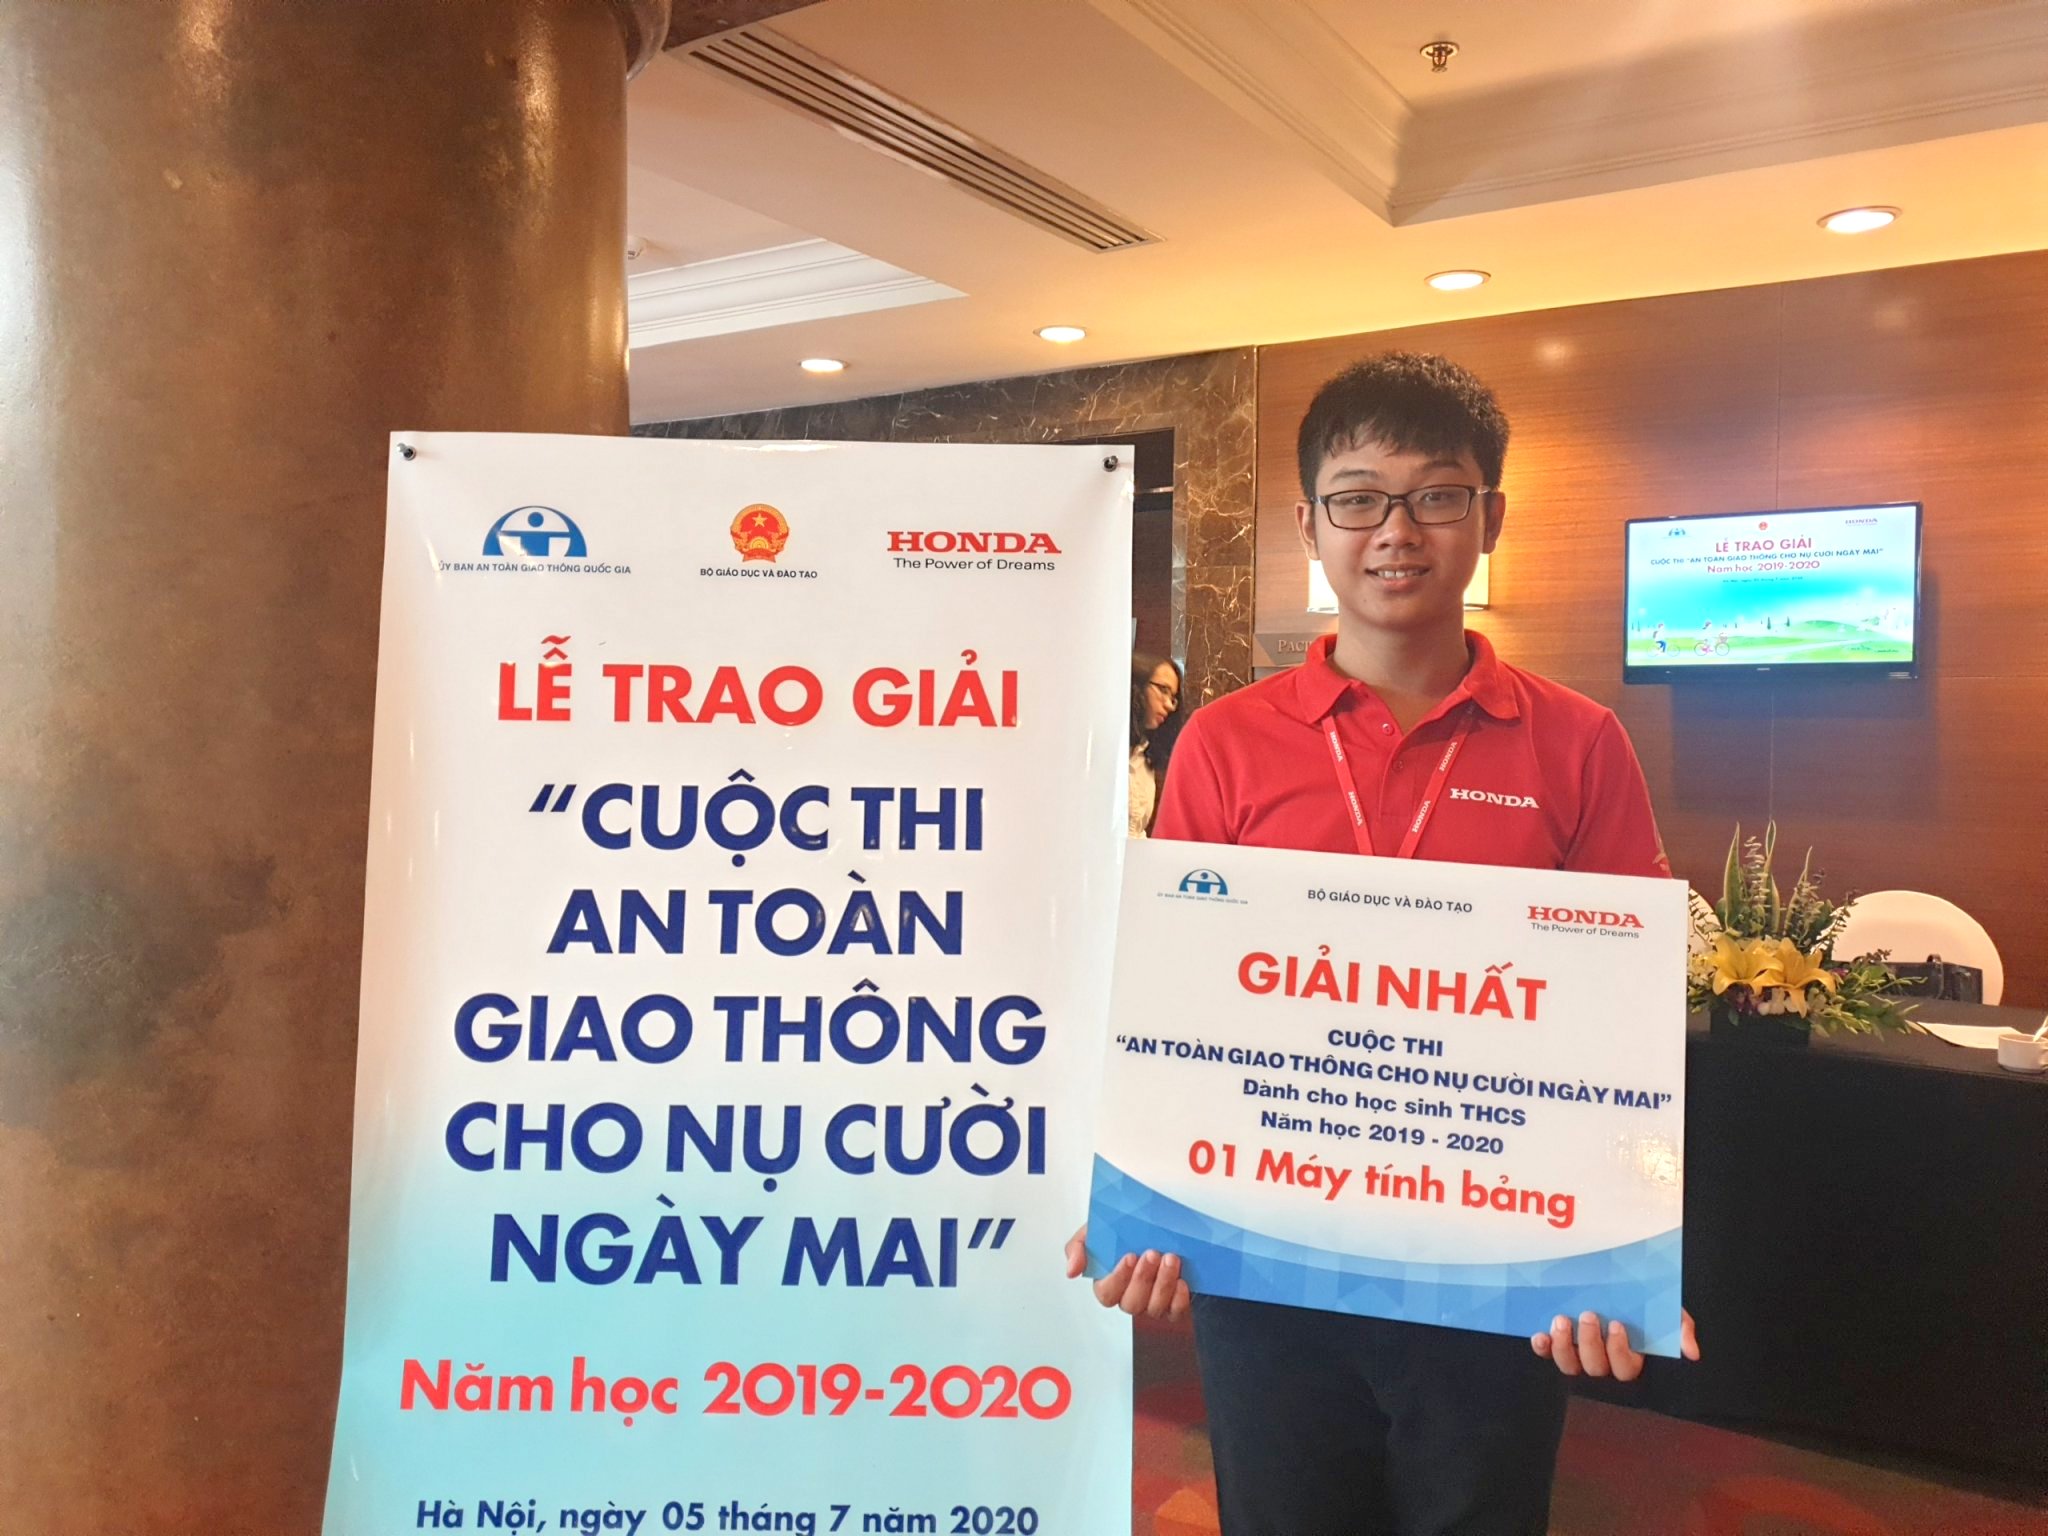 Lần đầu tiên trường THPT chuyên Nguyễn Trãi có giải nhất trong cuộc thi “An toàn giao thông cho nụ cười ngày mai”, 7/2020